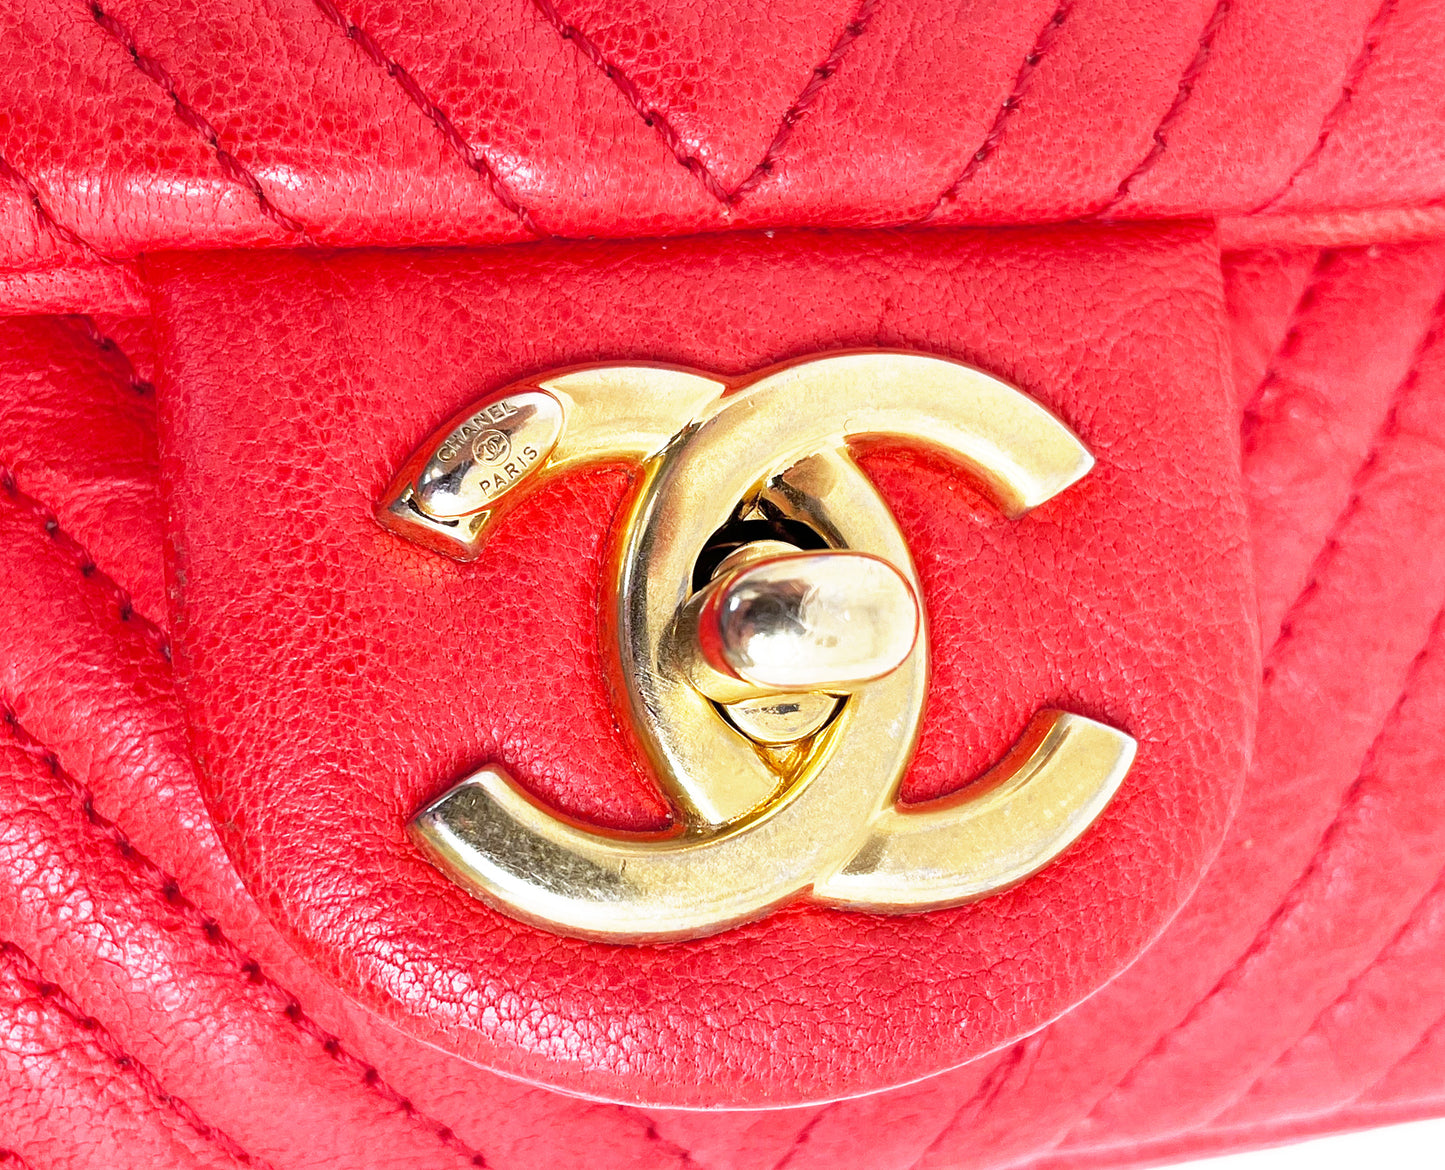 Superbe Sac Chanel 21 cm en cuir et motif Chevron Rouge valentine.